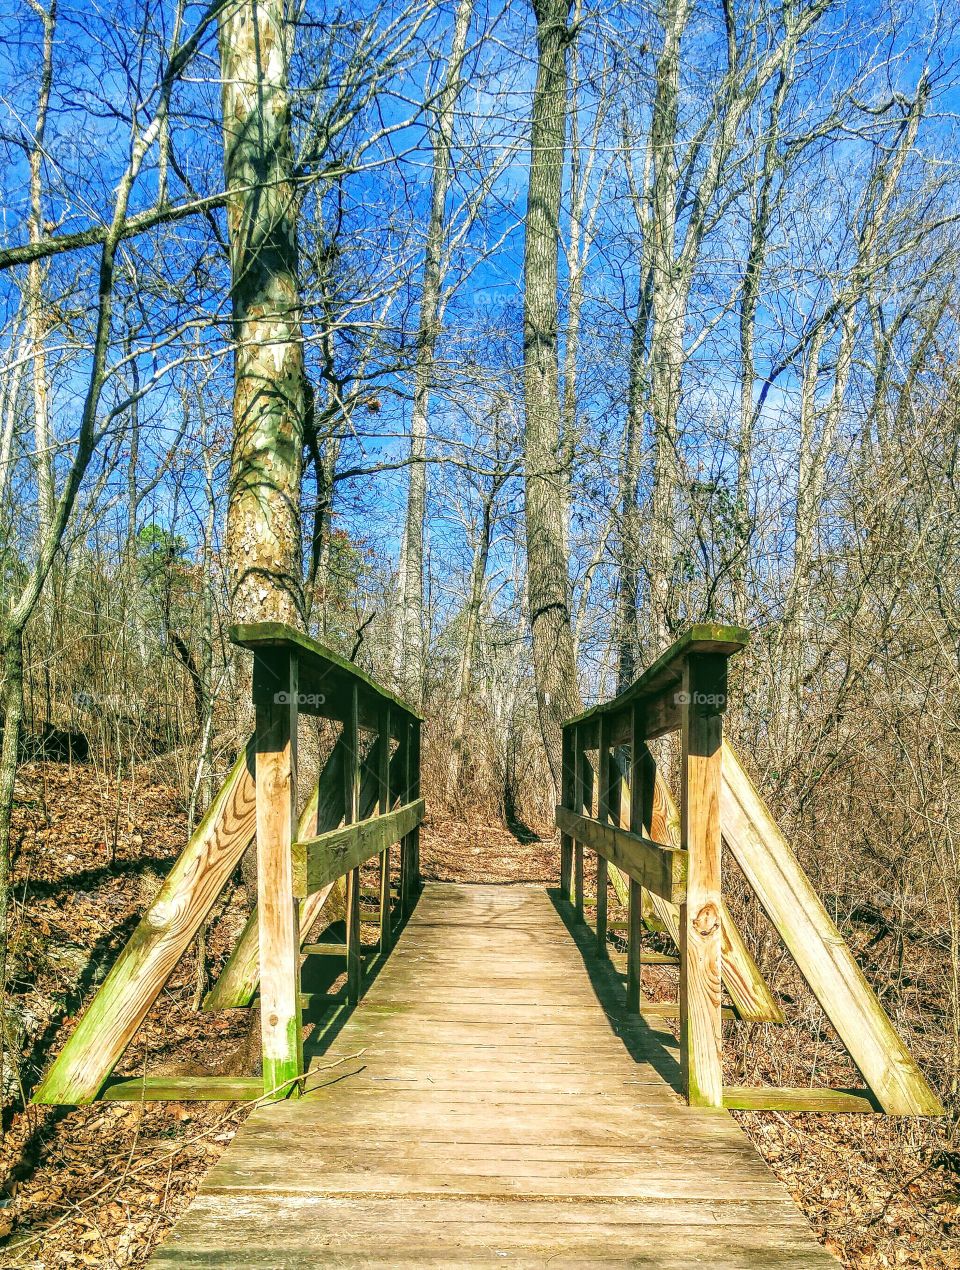 Wooden boardwalk in forest